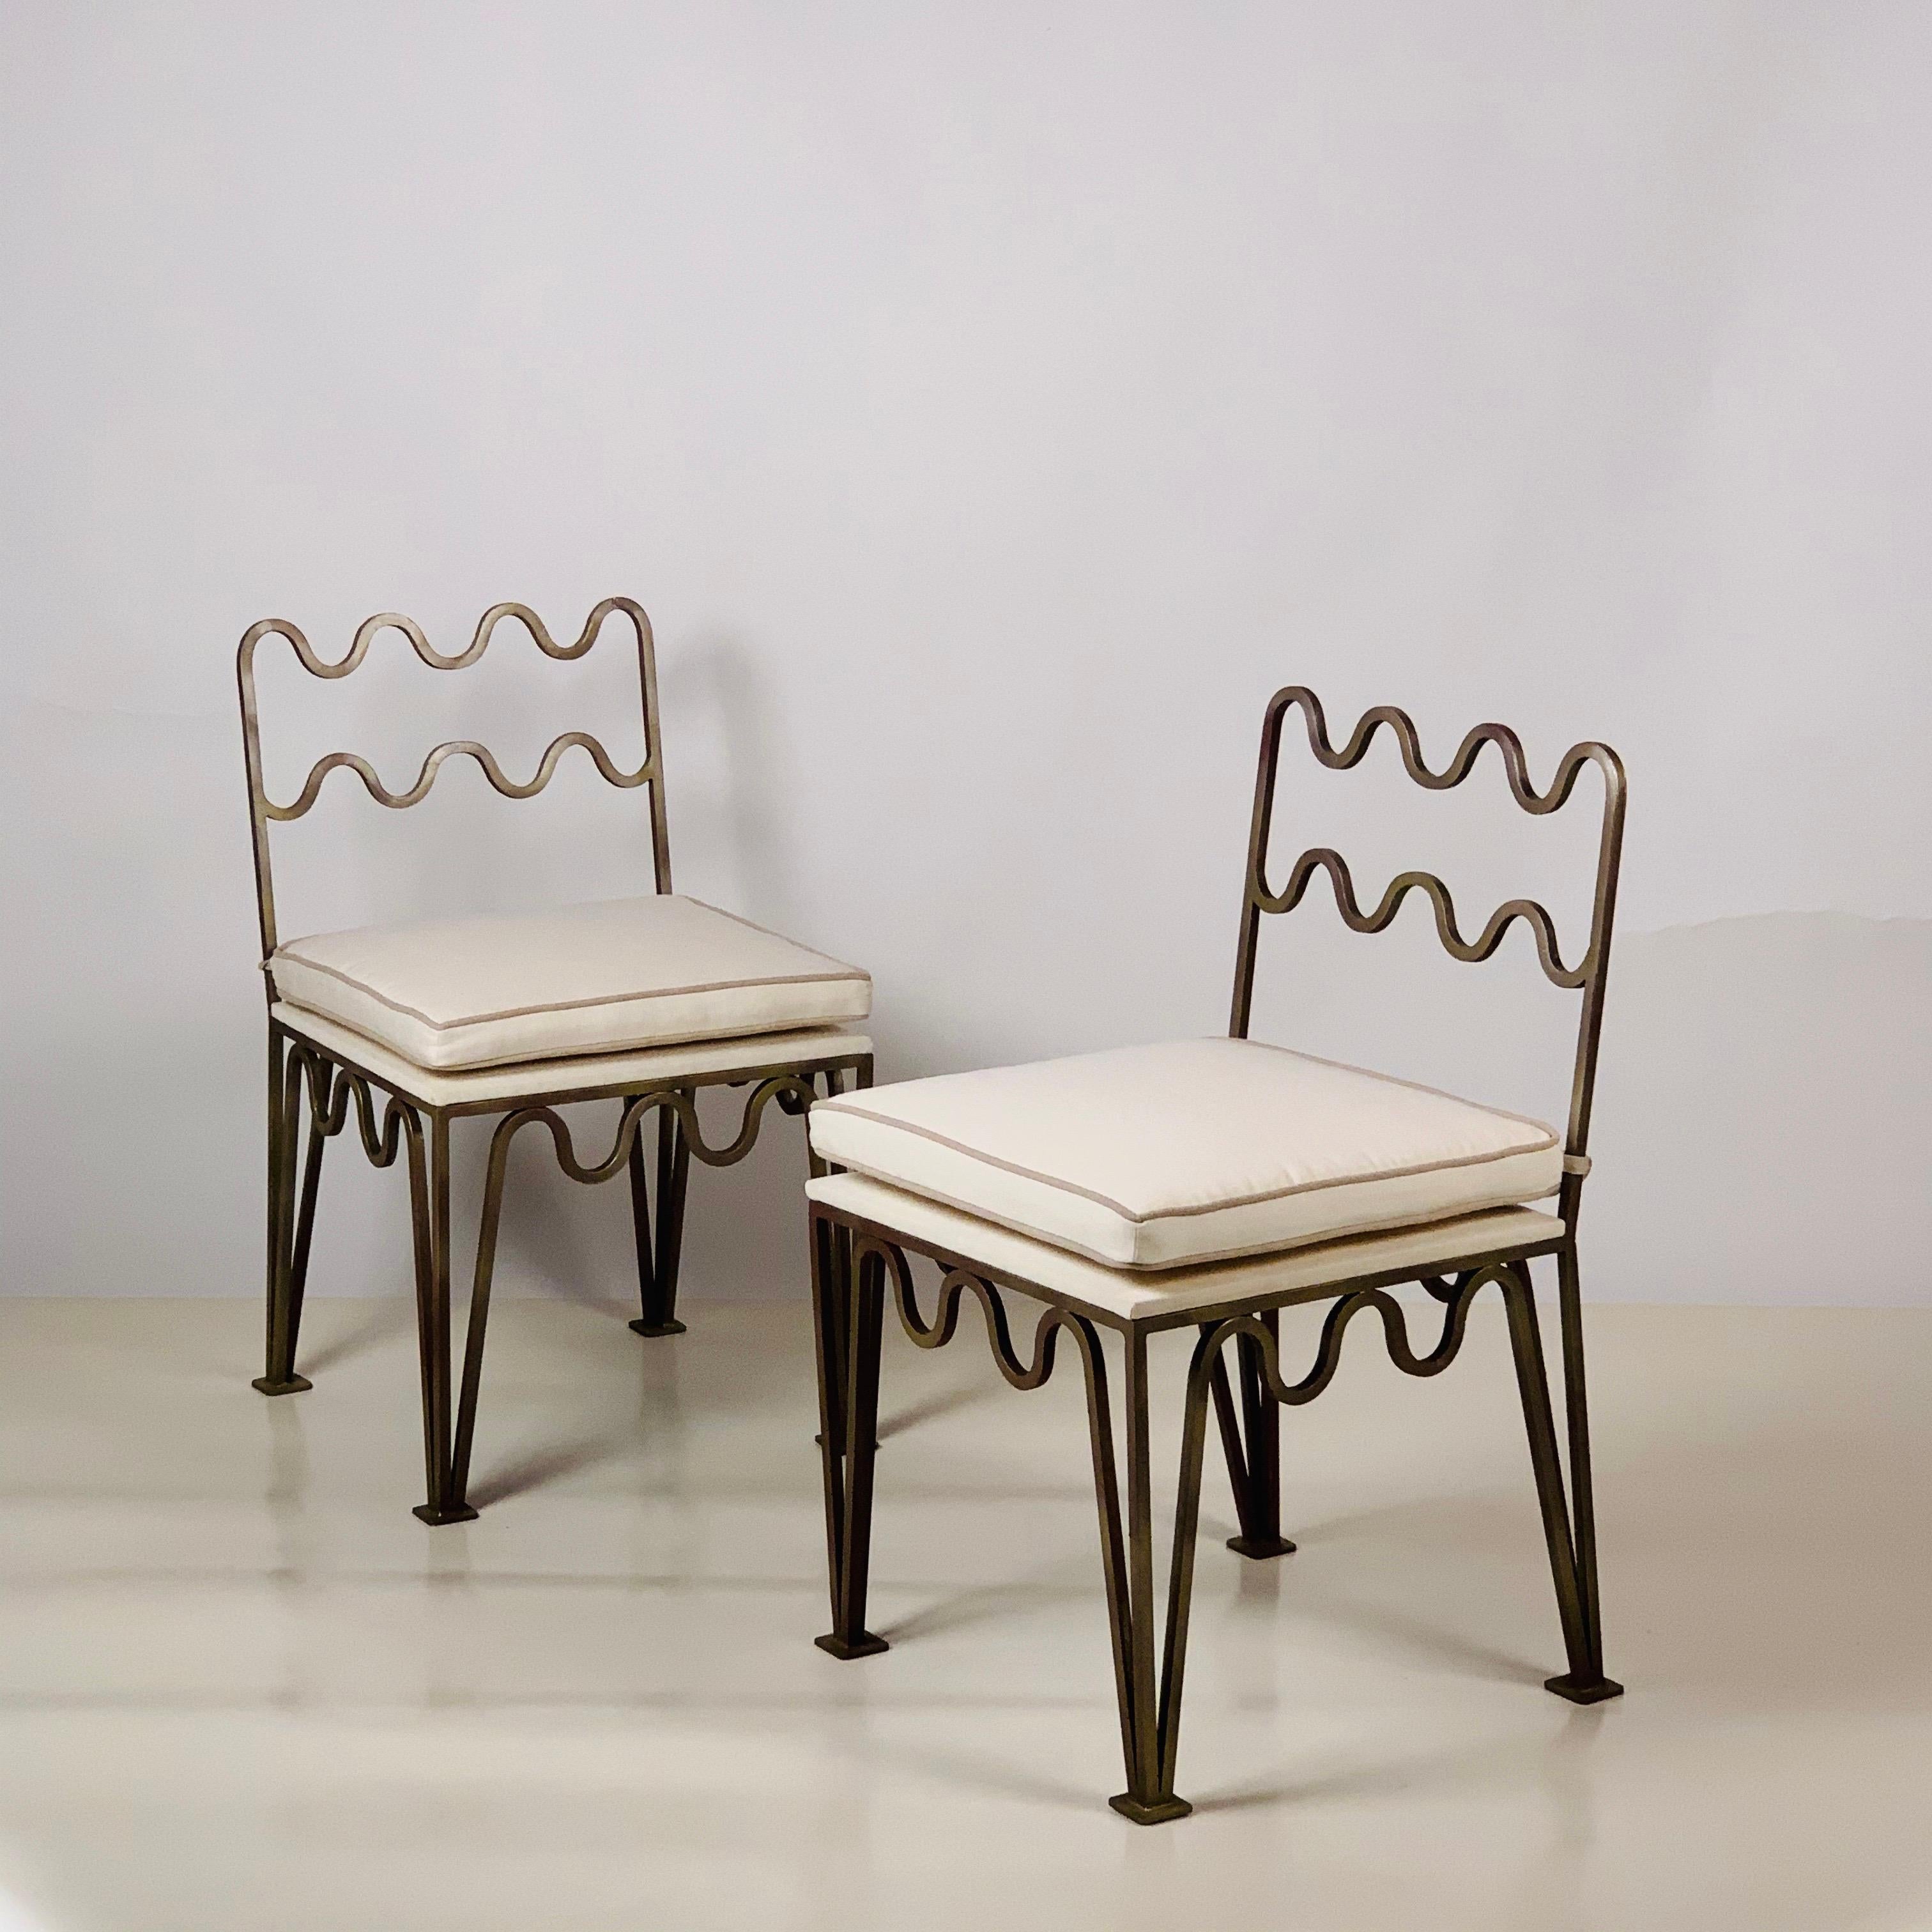 Paire de chaises d'appoint chic et ondulantes 'Méandre' par Design/One.

Cadres en acier bronzé. Coussins rembourrés en lin naturel.

Ces chaises Méandre™ de notre ligne exclusive Design Frères® sont fabriquées à la main dans notre atelier de Los